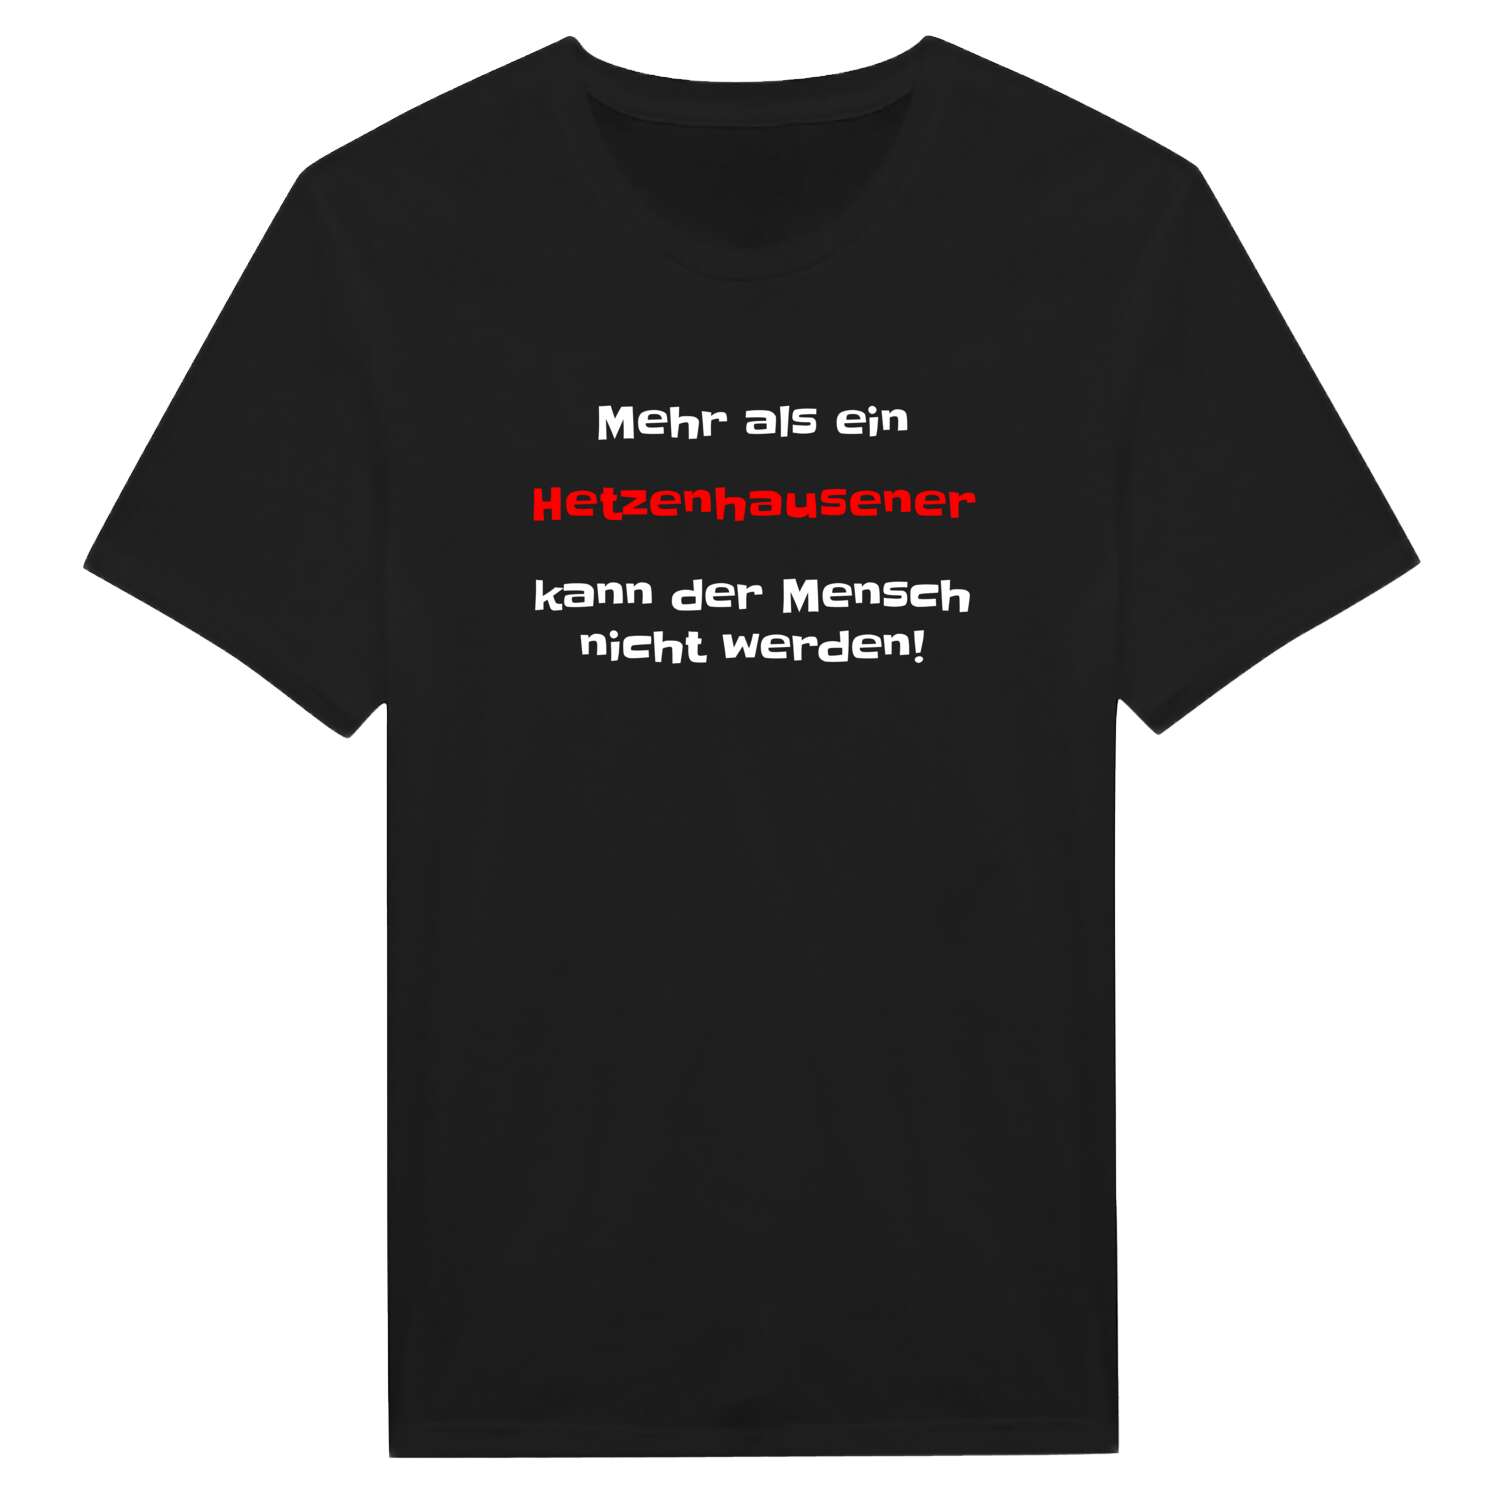 Hetzenhausen T-Shirt »Mehr als ein«